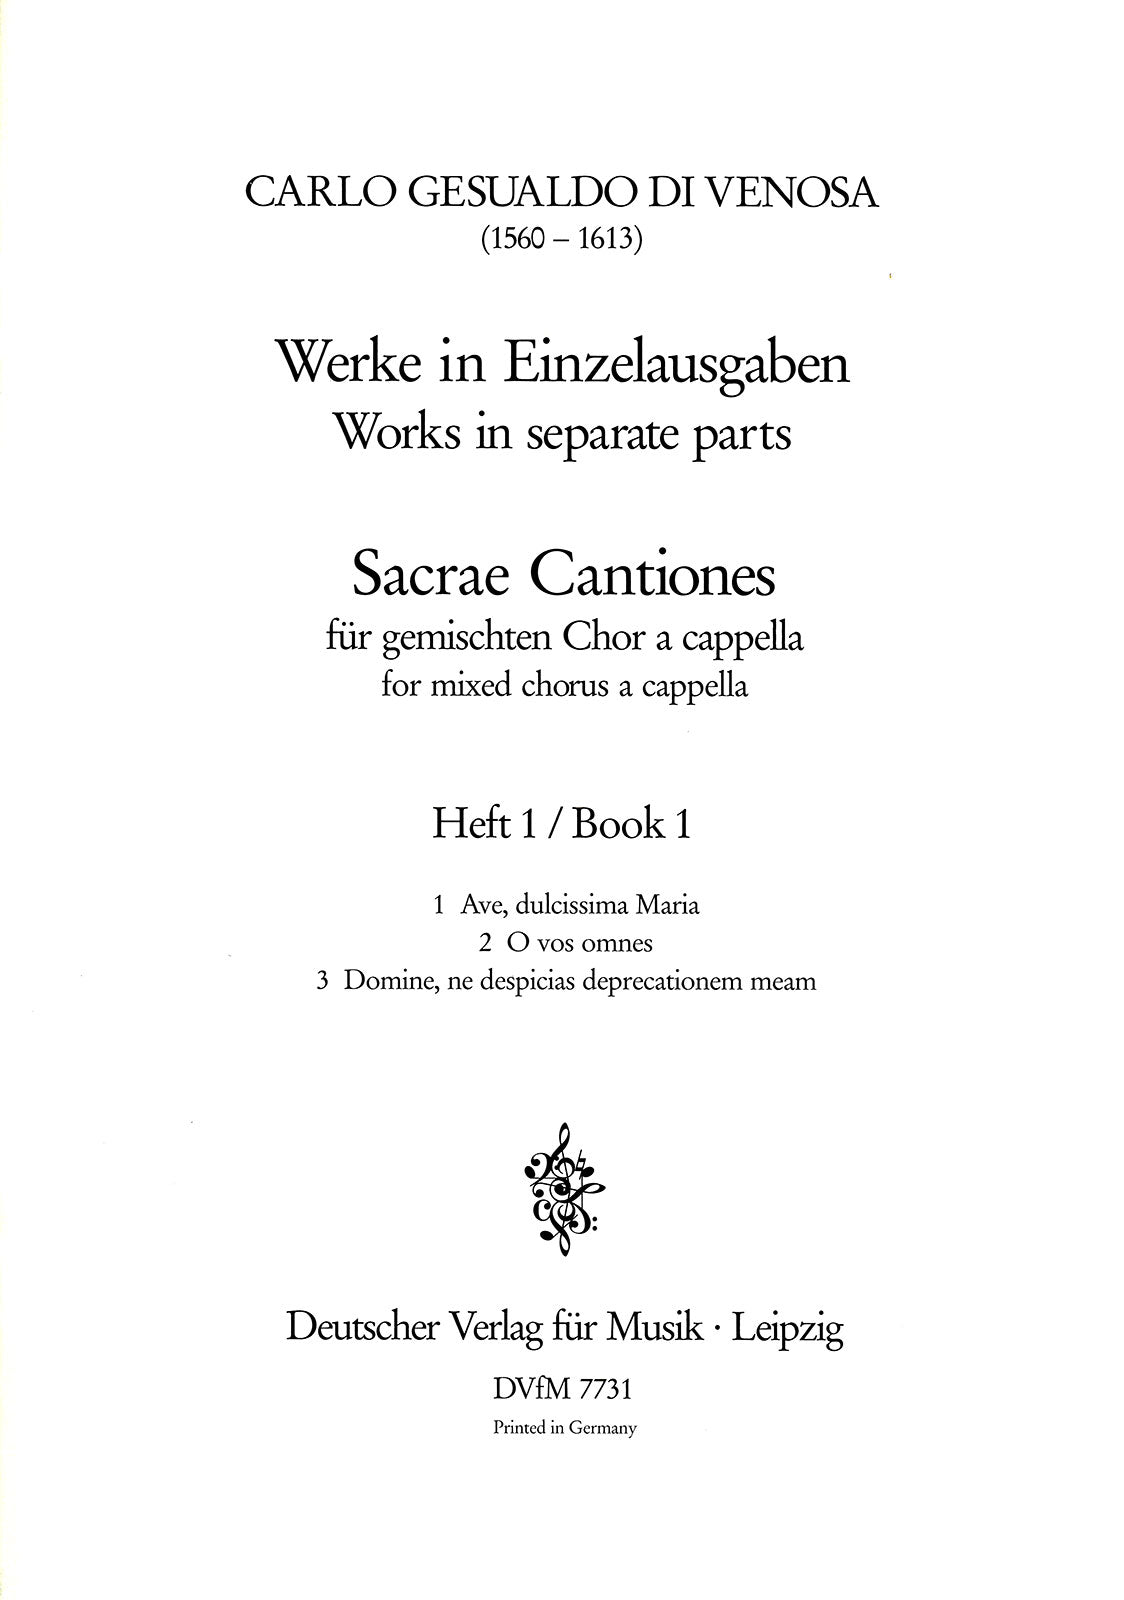 Gesualdo: Sacrae Cantiones - Volume 1